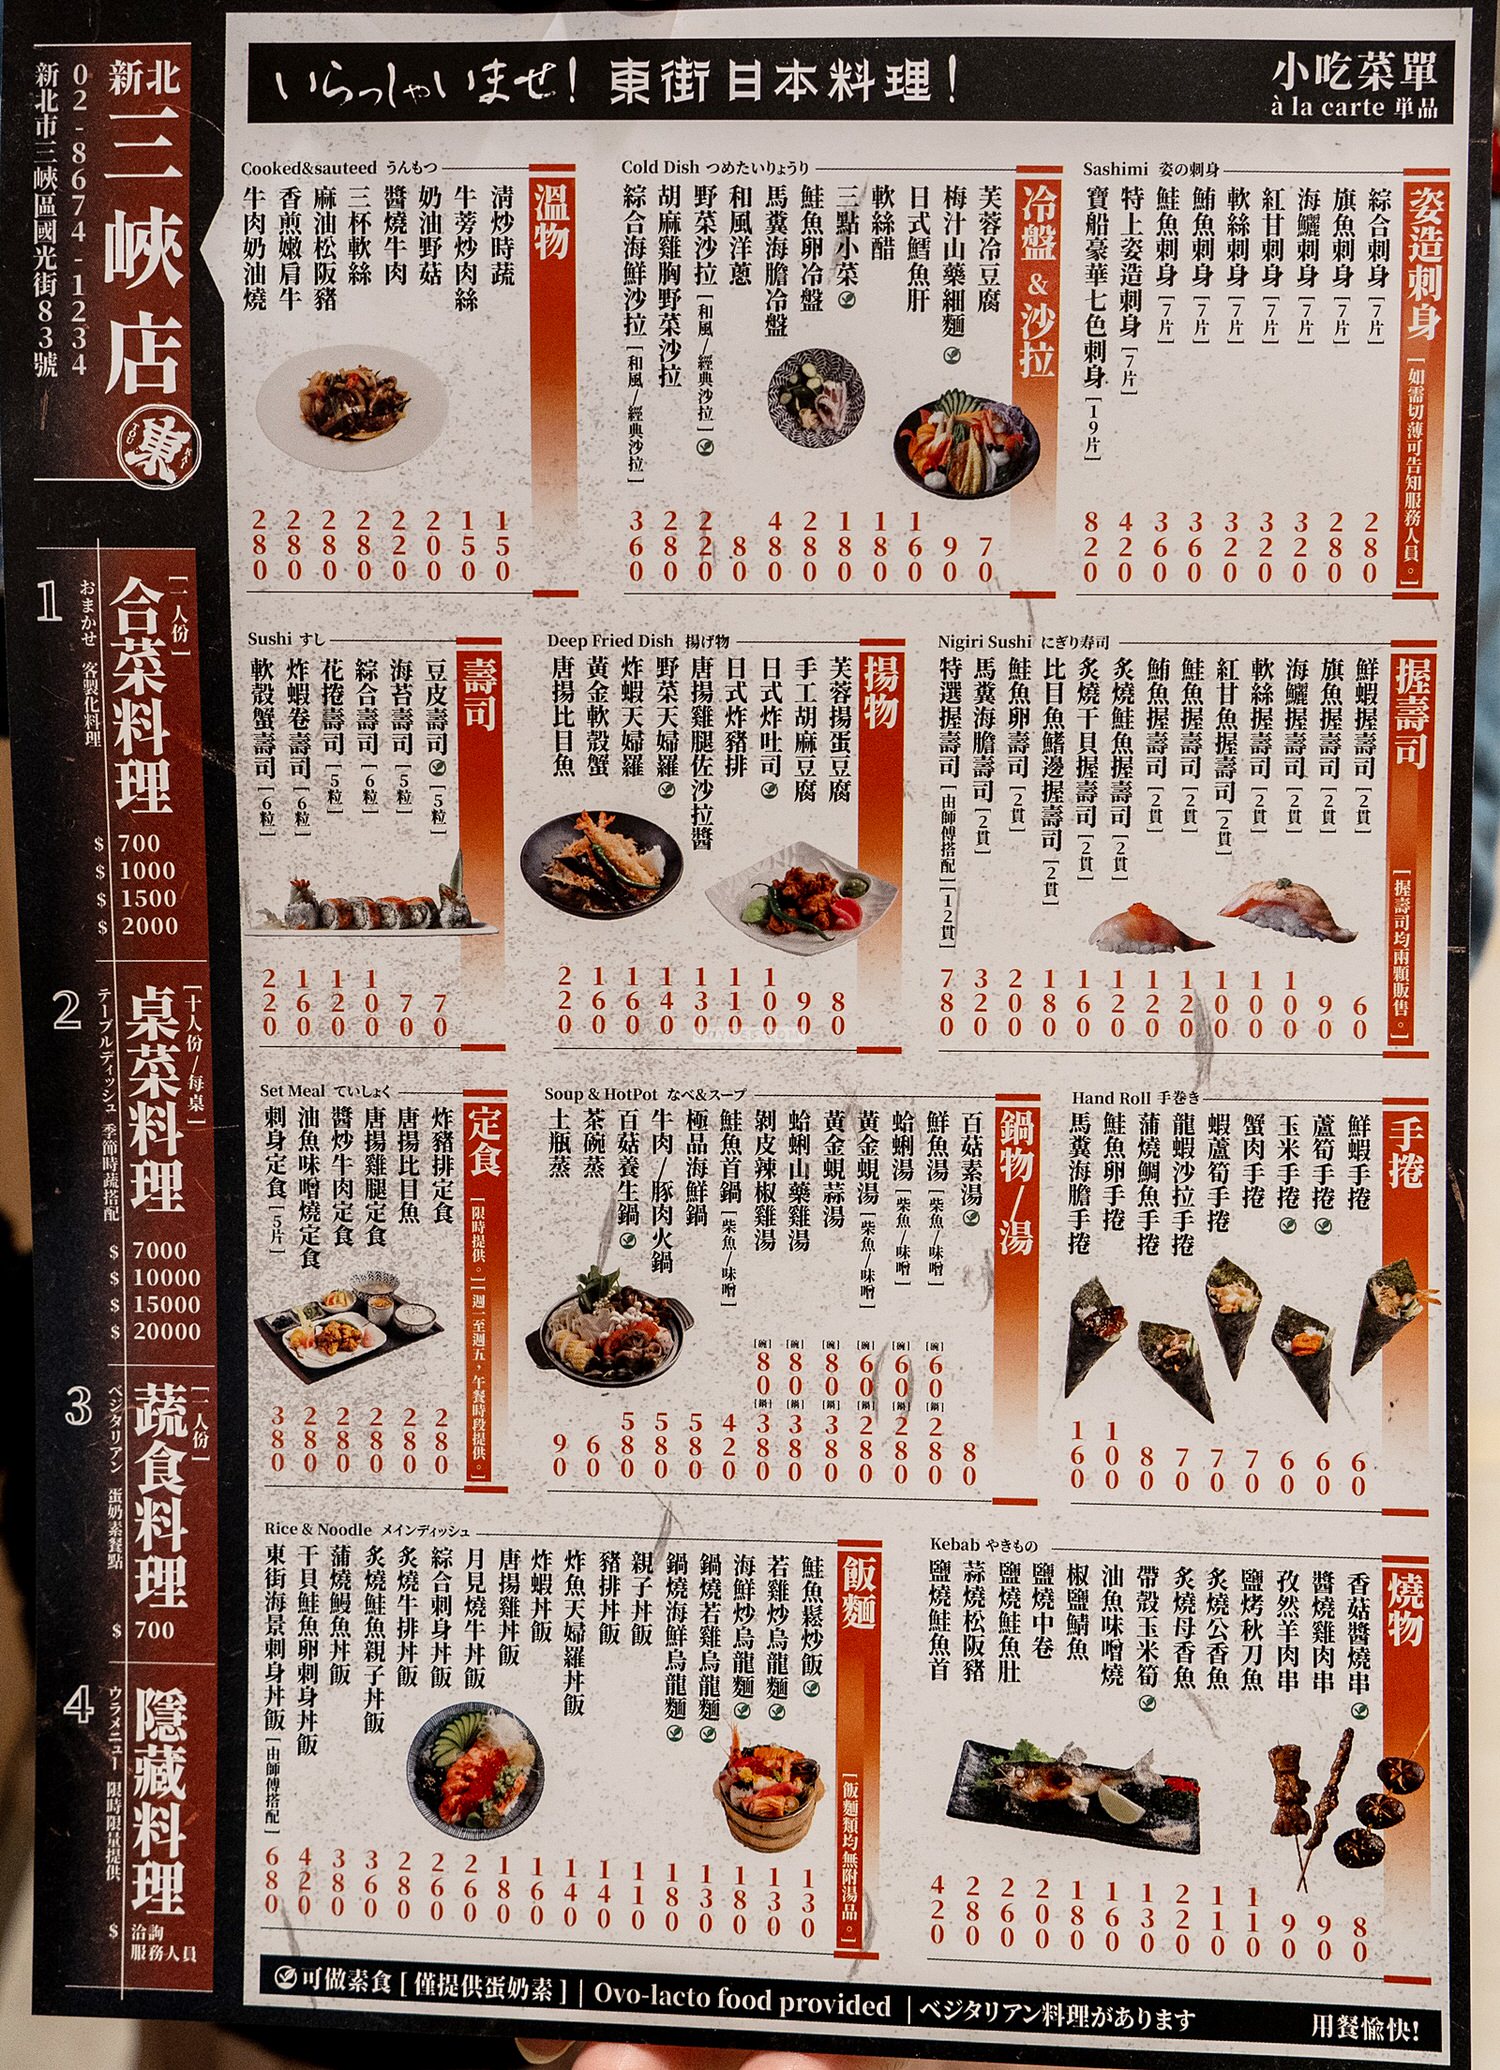 東街日本料理菜單三峽東街日本料理菜單 03